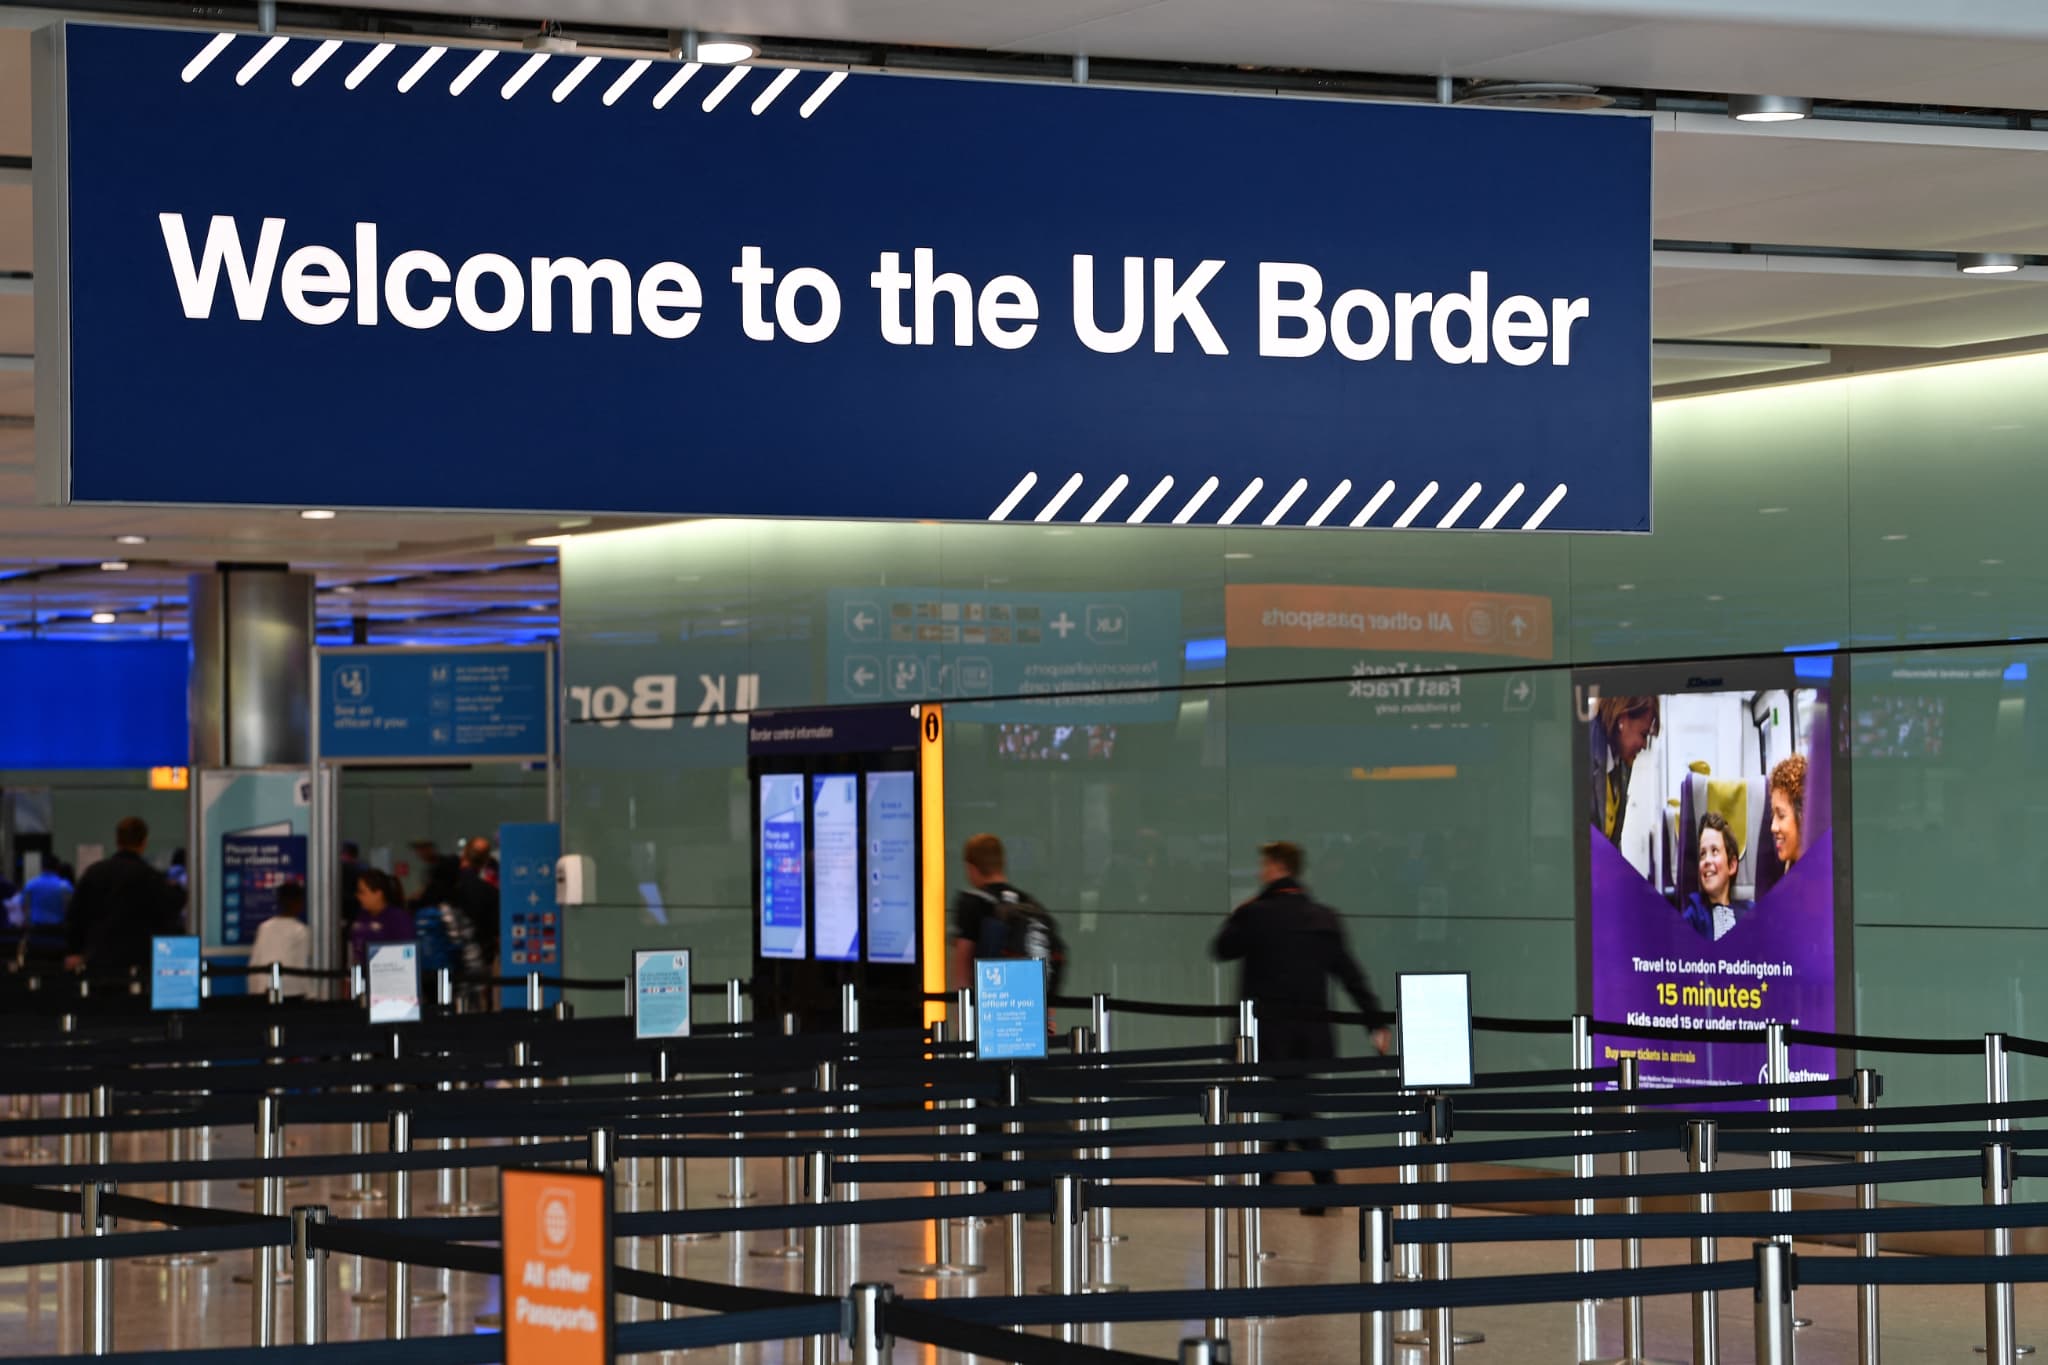 royaume-uni: une panne affecte les postes-frontières, les aéroports du pays paralysés